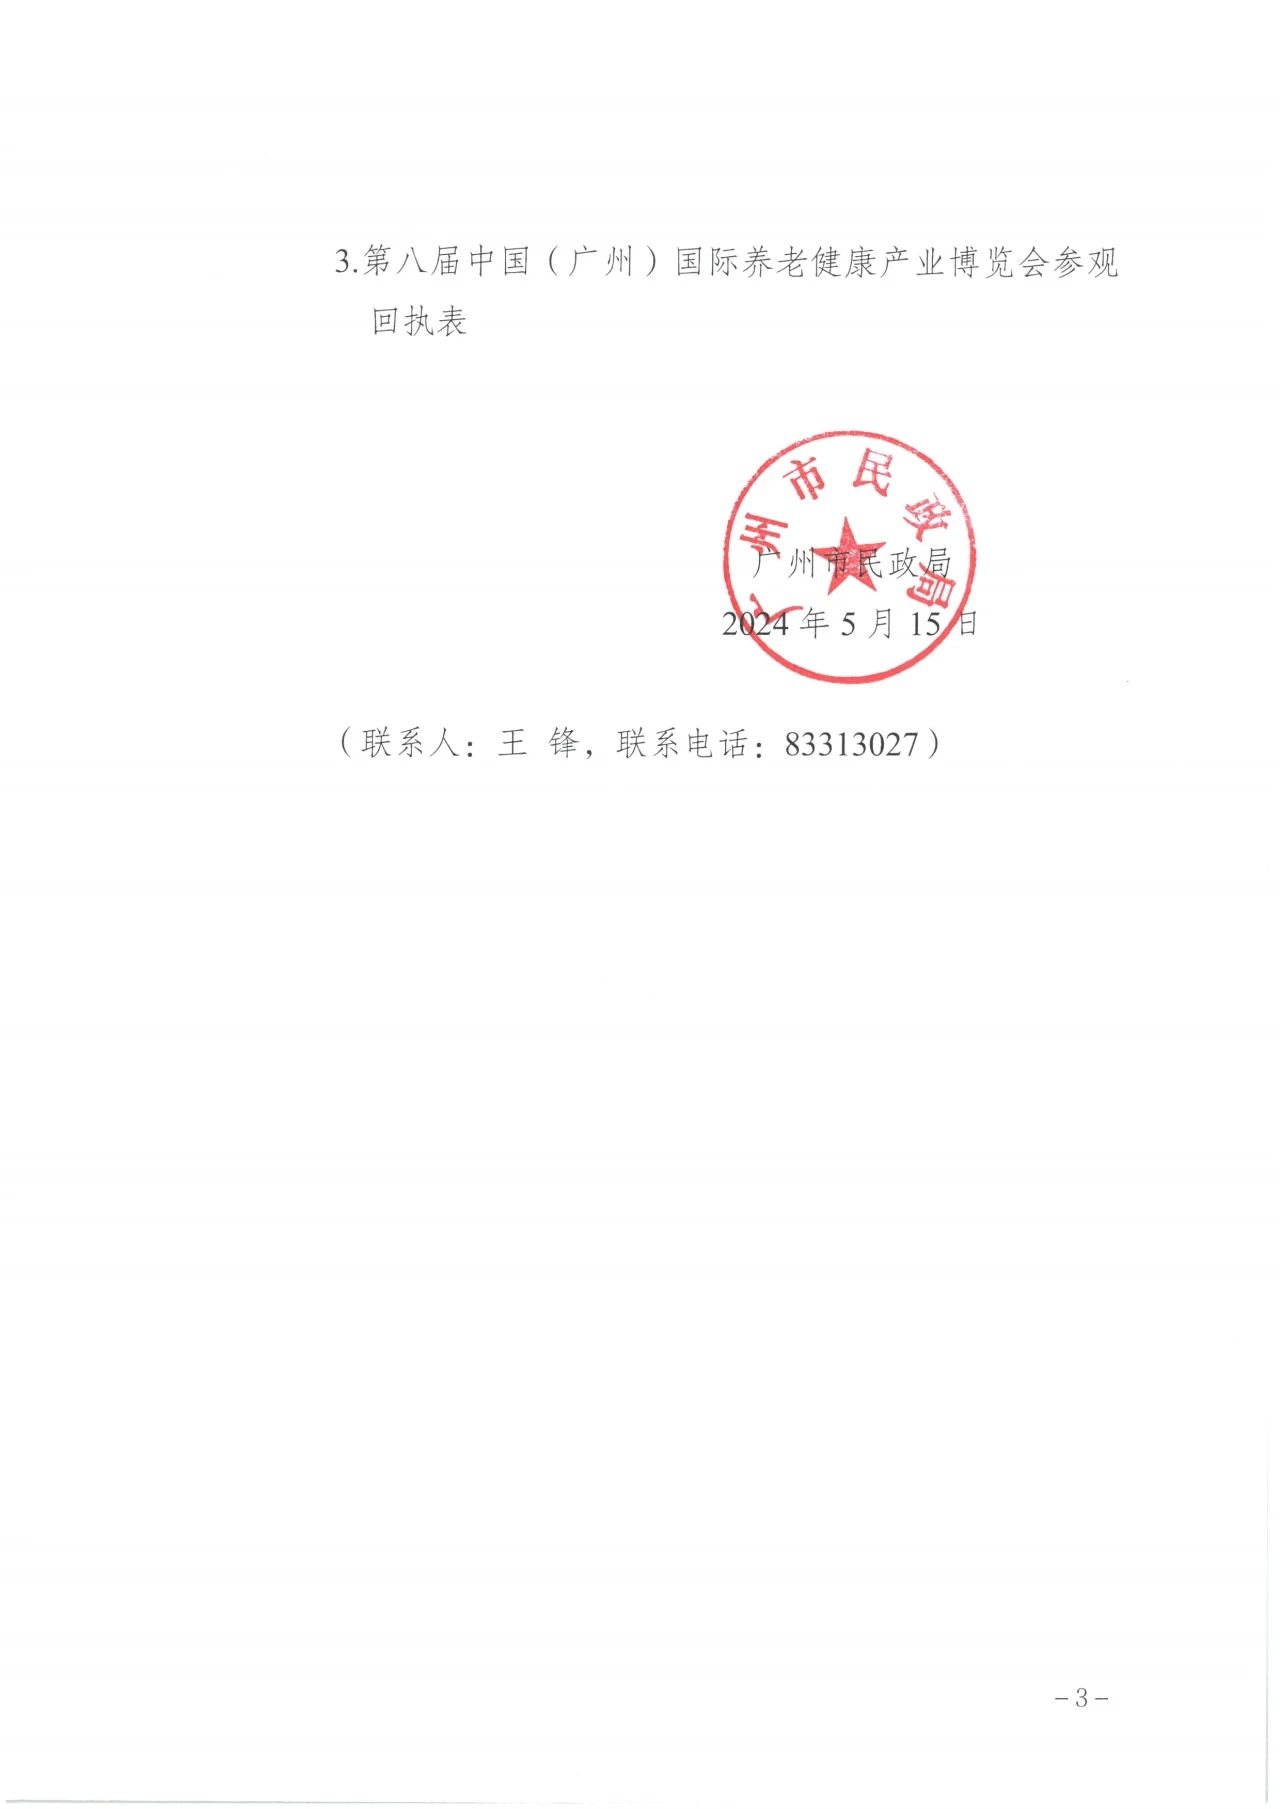 通知  广州市民政局关于邀请组织参加第八届广州老博会的函3.jpg